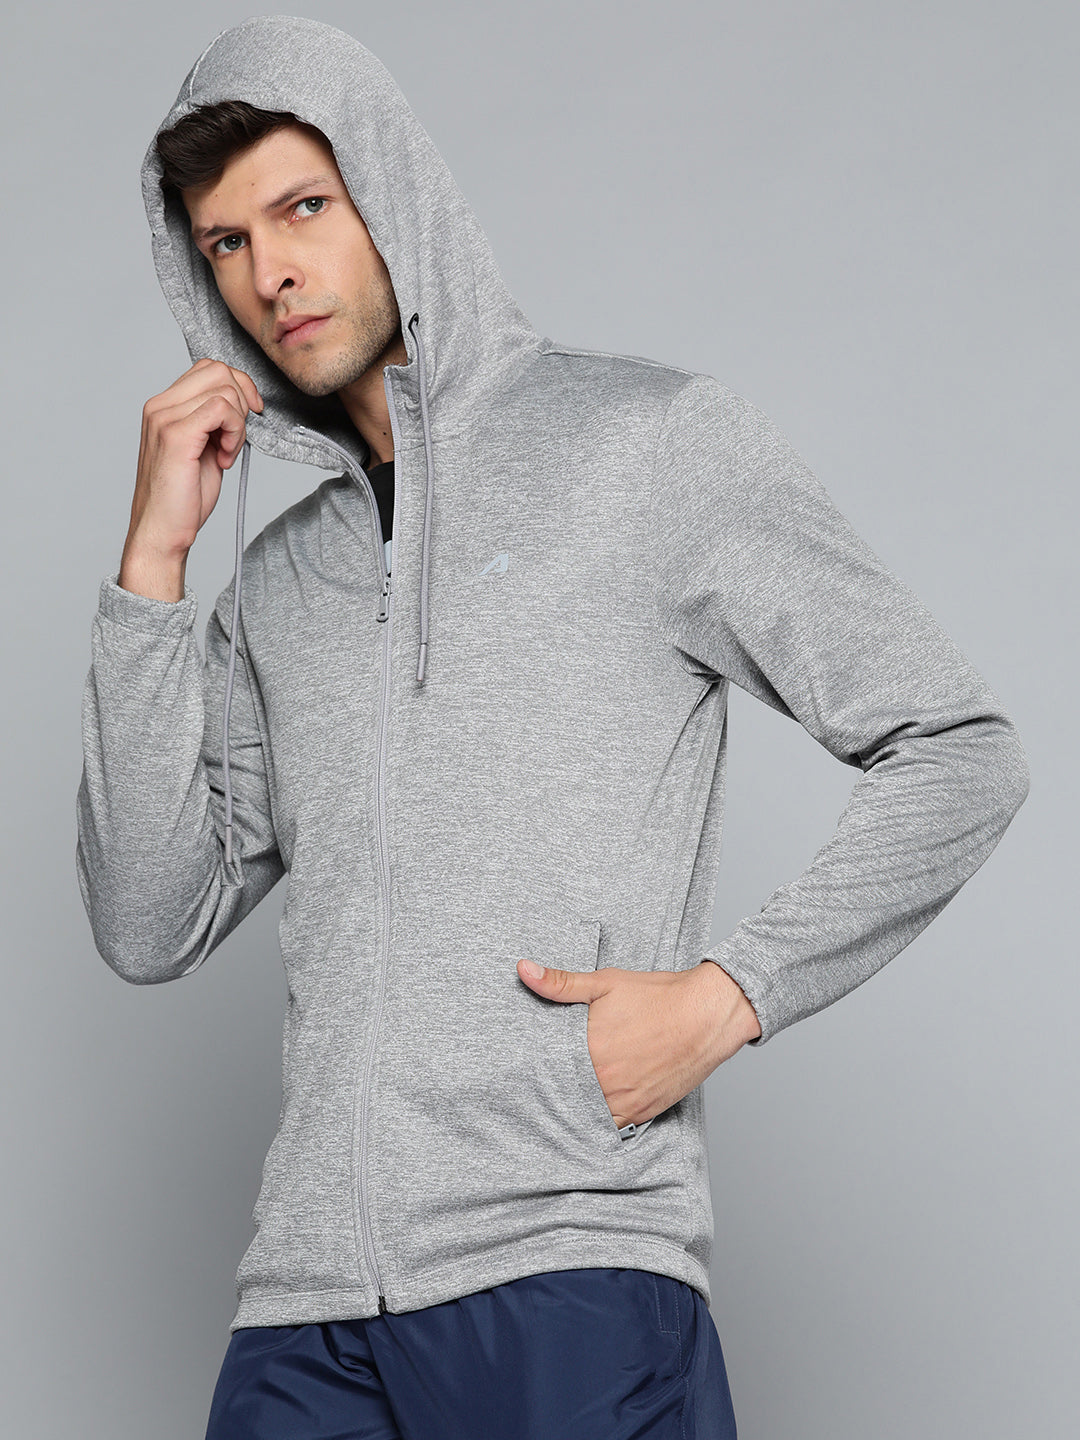 Alcis Men Grey Solid Hooded Sweatshirt